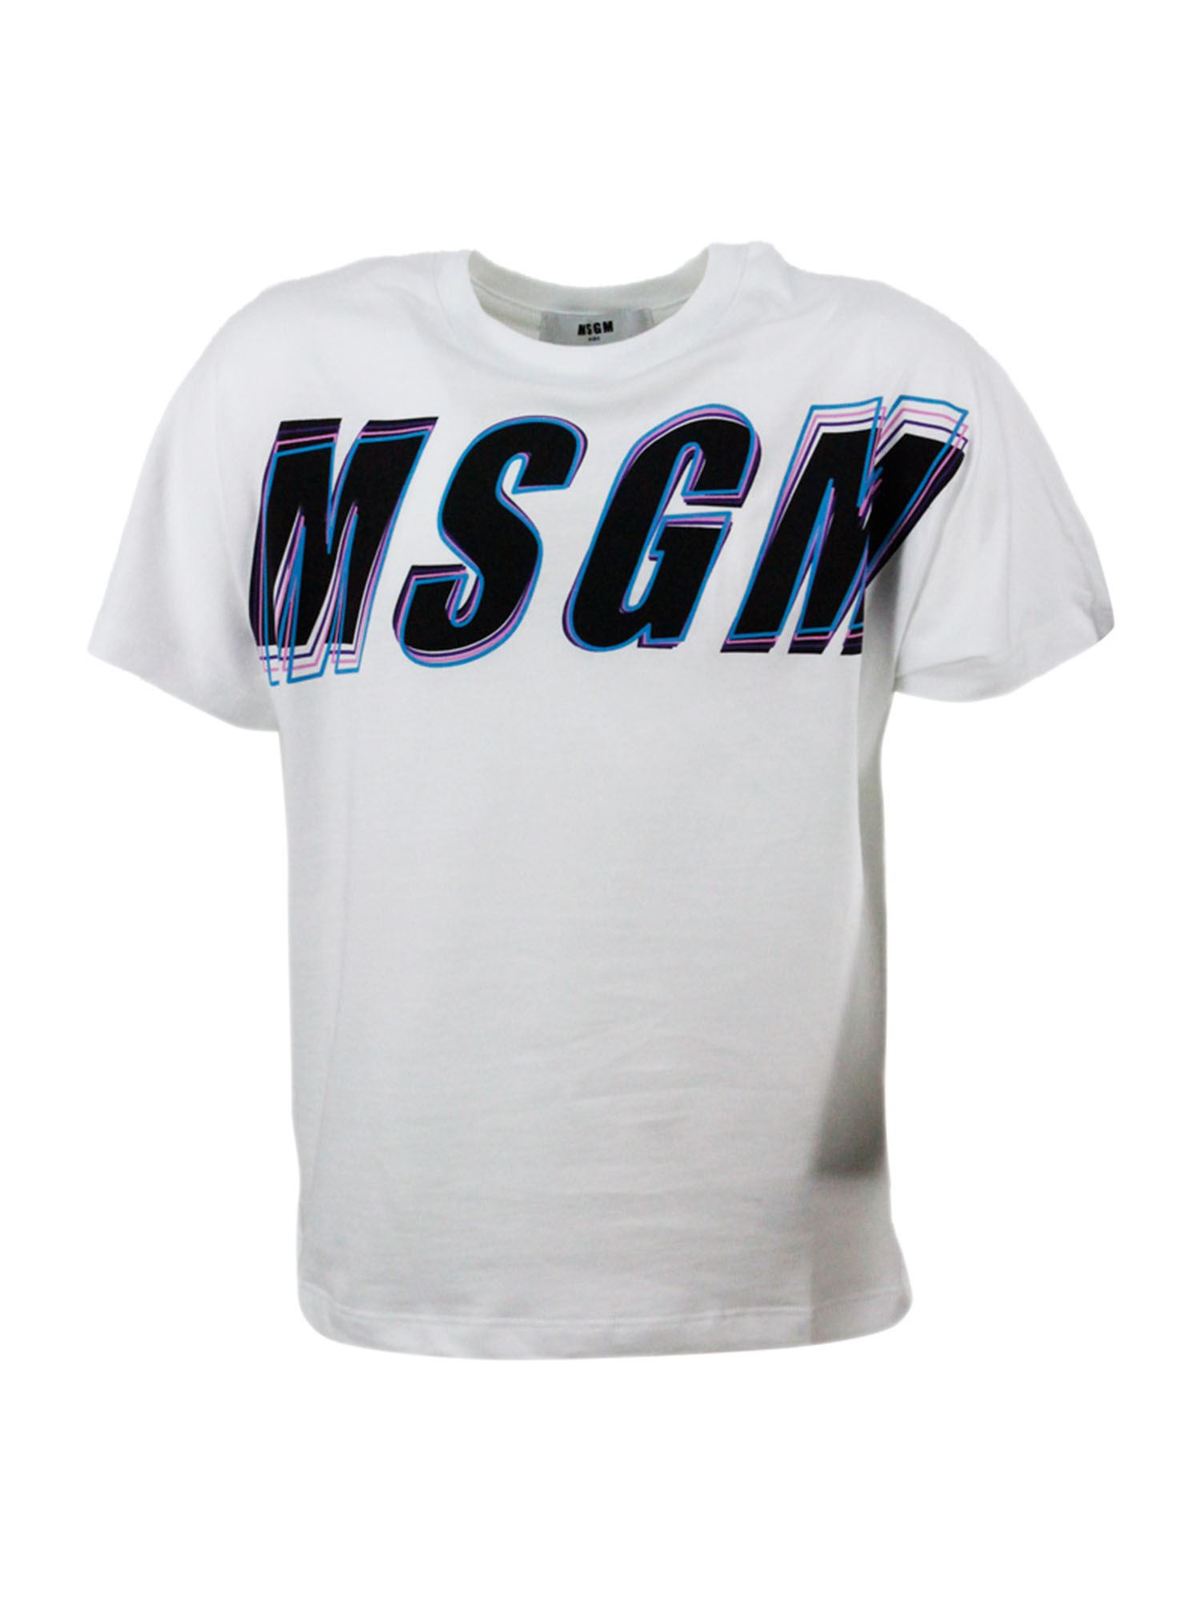 Tシャツ M.S.G.M. Kids - Tシャツ - 白 - MS027629001 | THEBS [iKRIX]